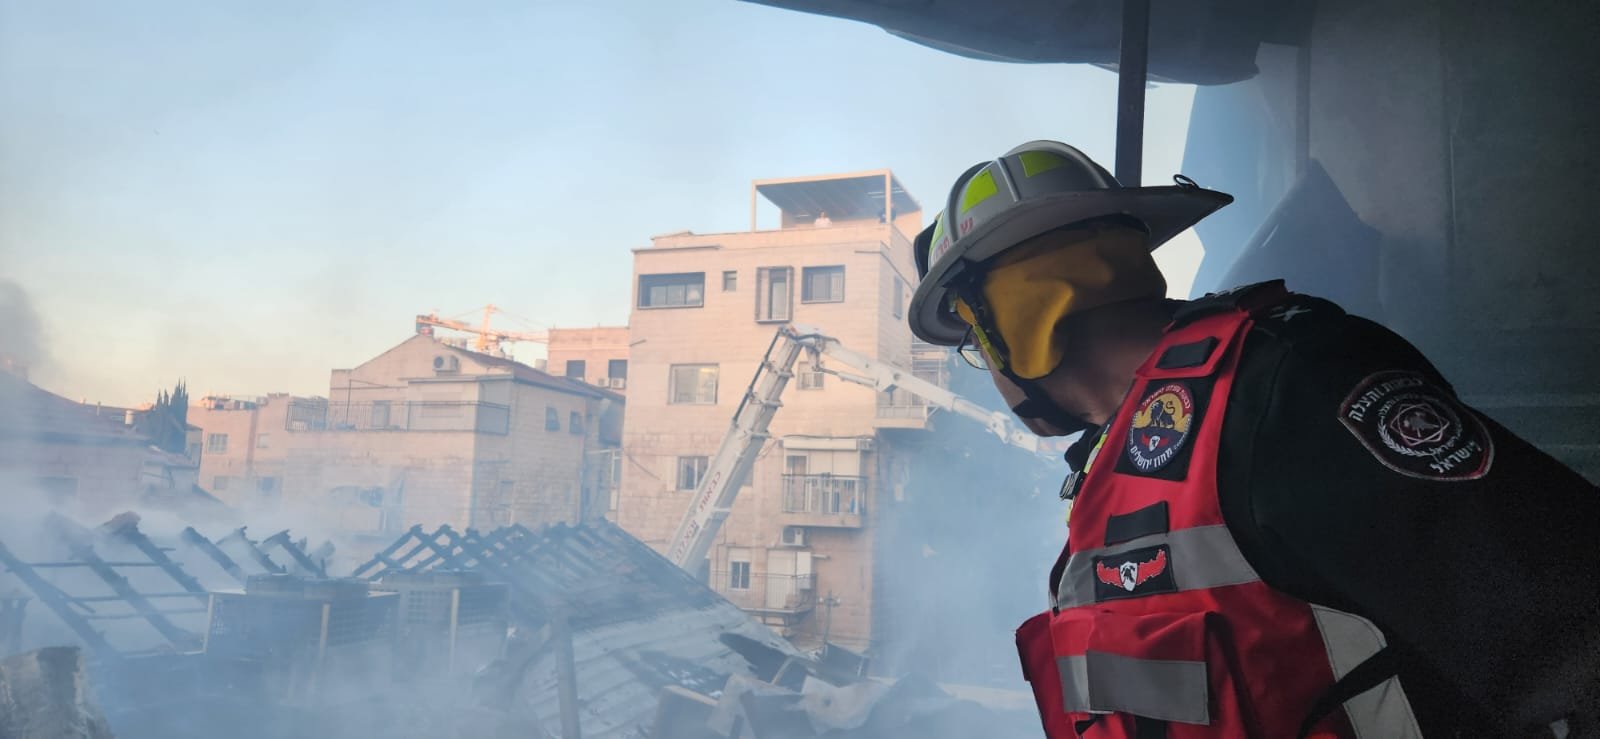 القدس:حريق في معهد ديني وكنيس وتخليص عالقين.-14